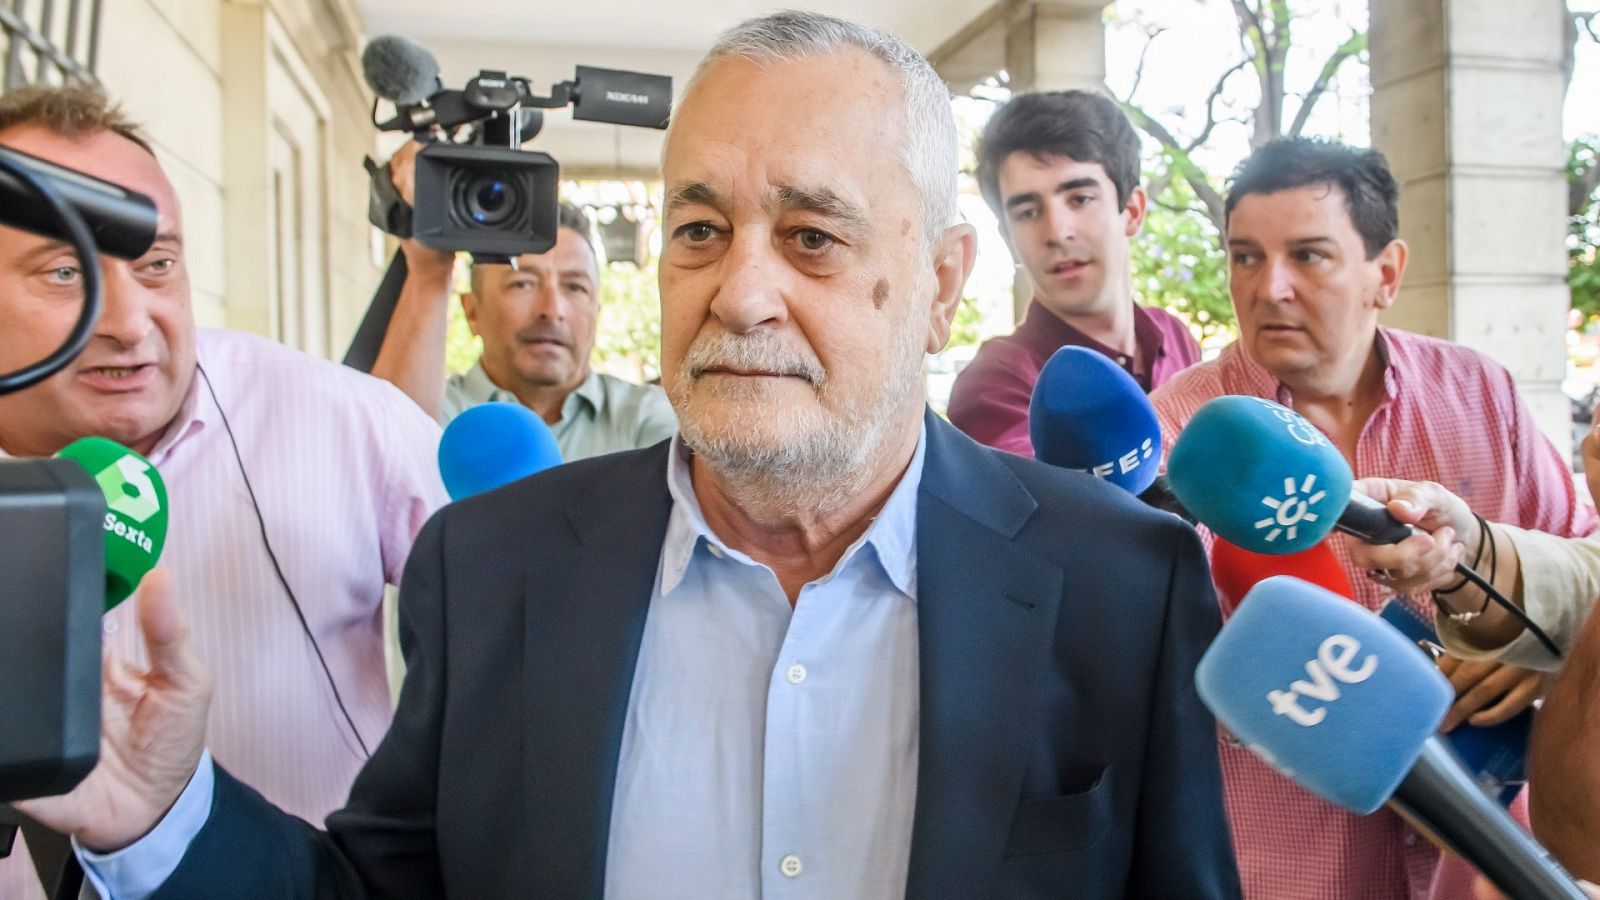 El expresidente de la Junta de Andalucía José Antonio Griñán